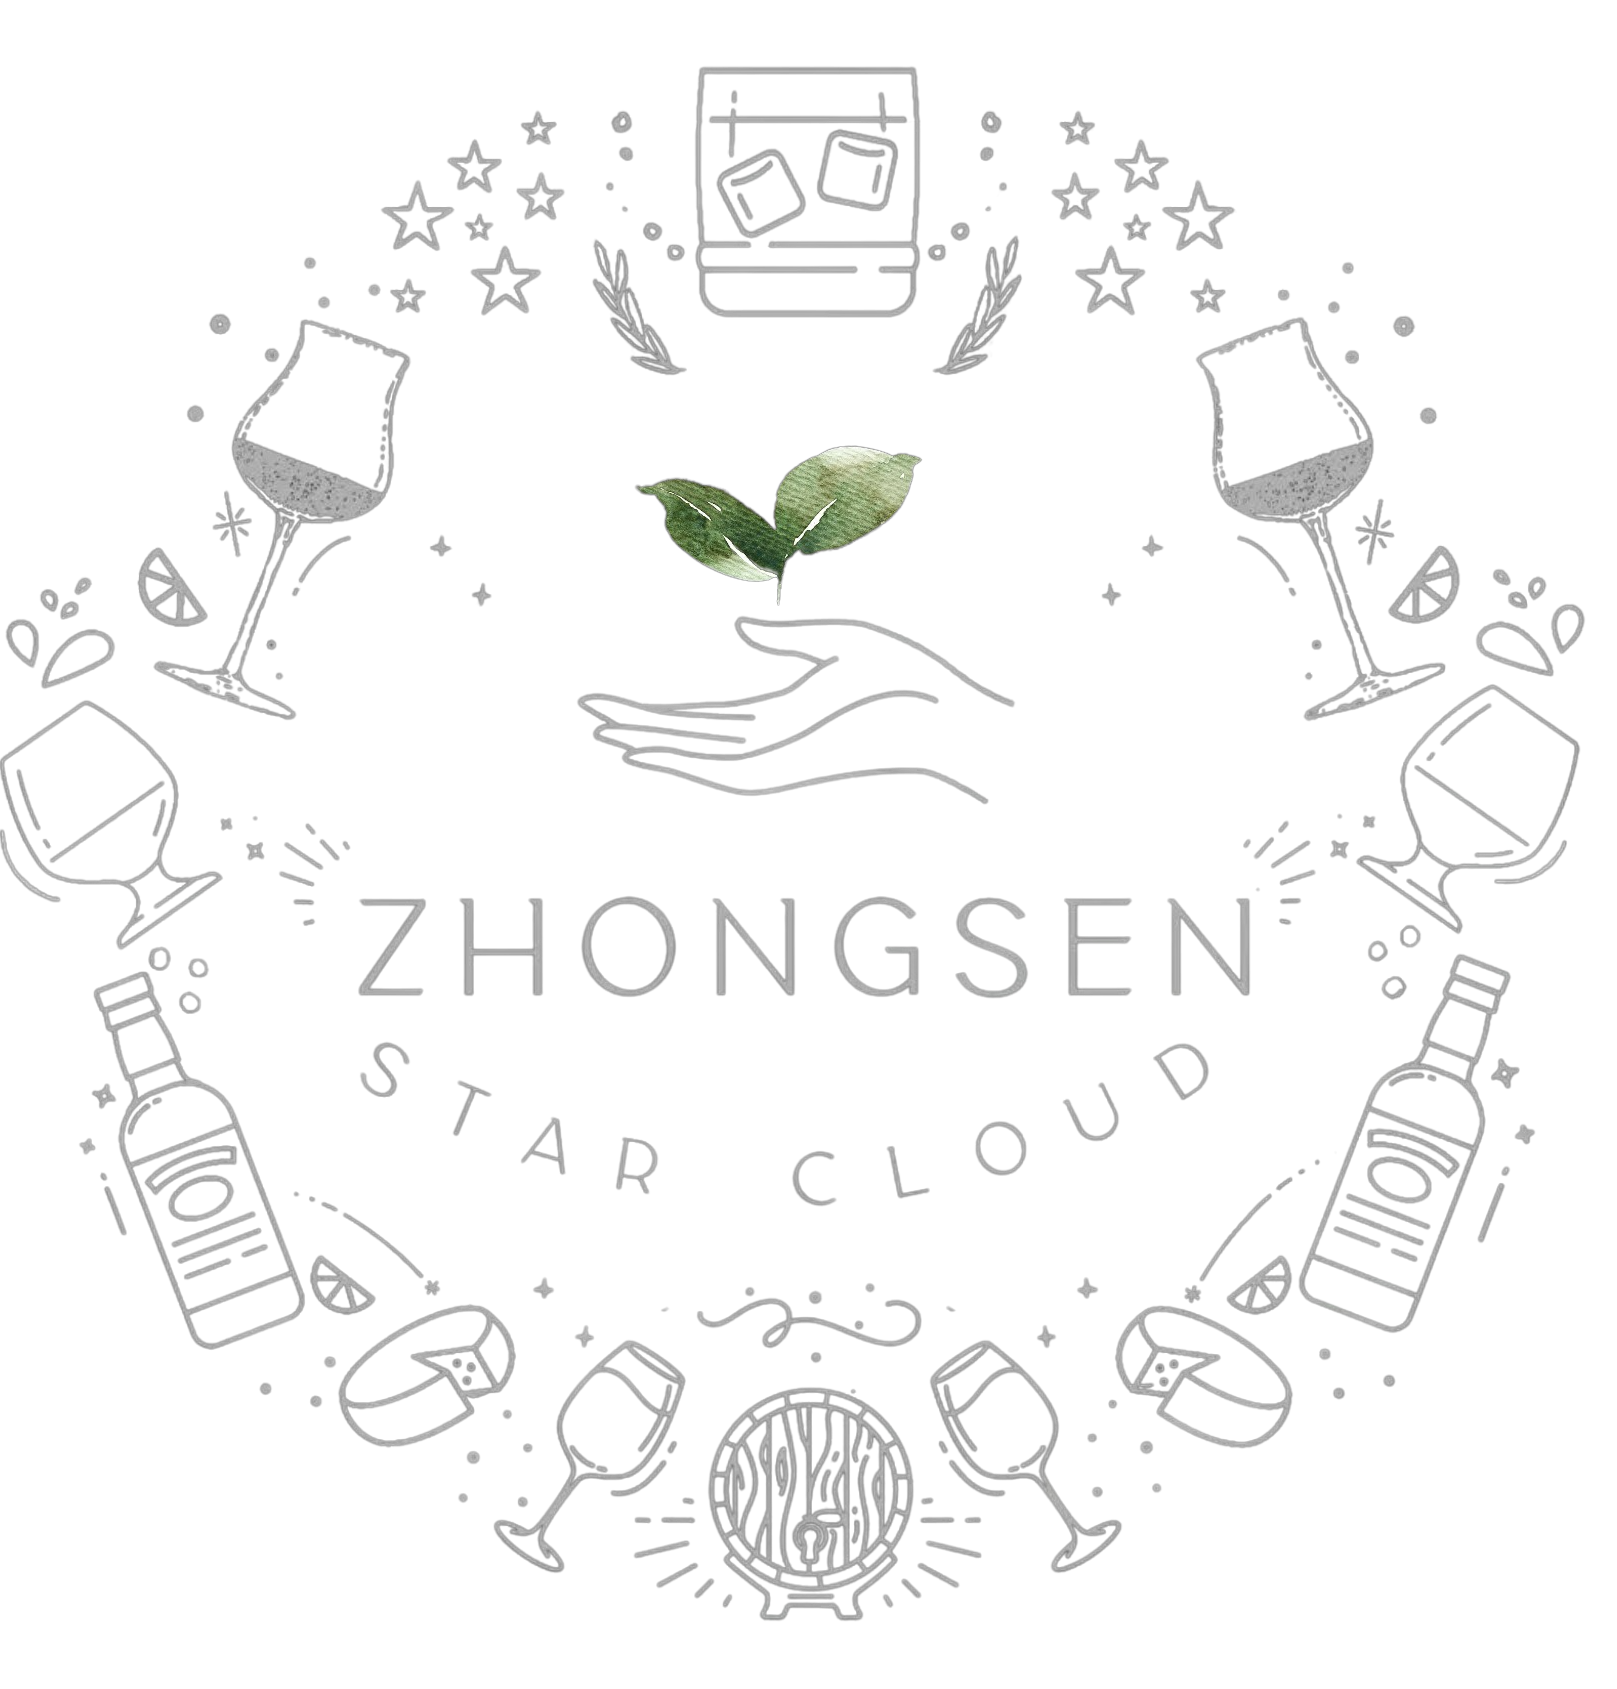 Zhongsen Star Cloud